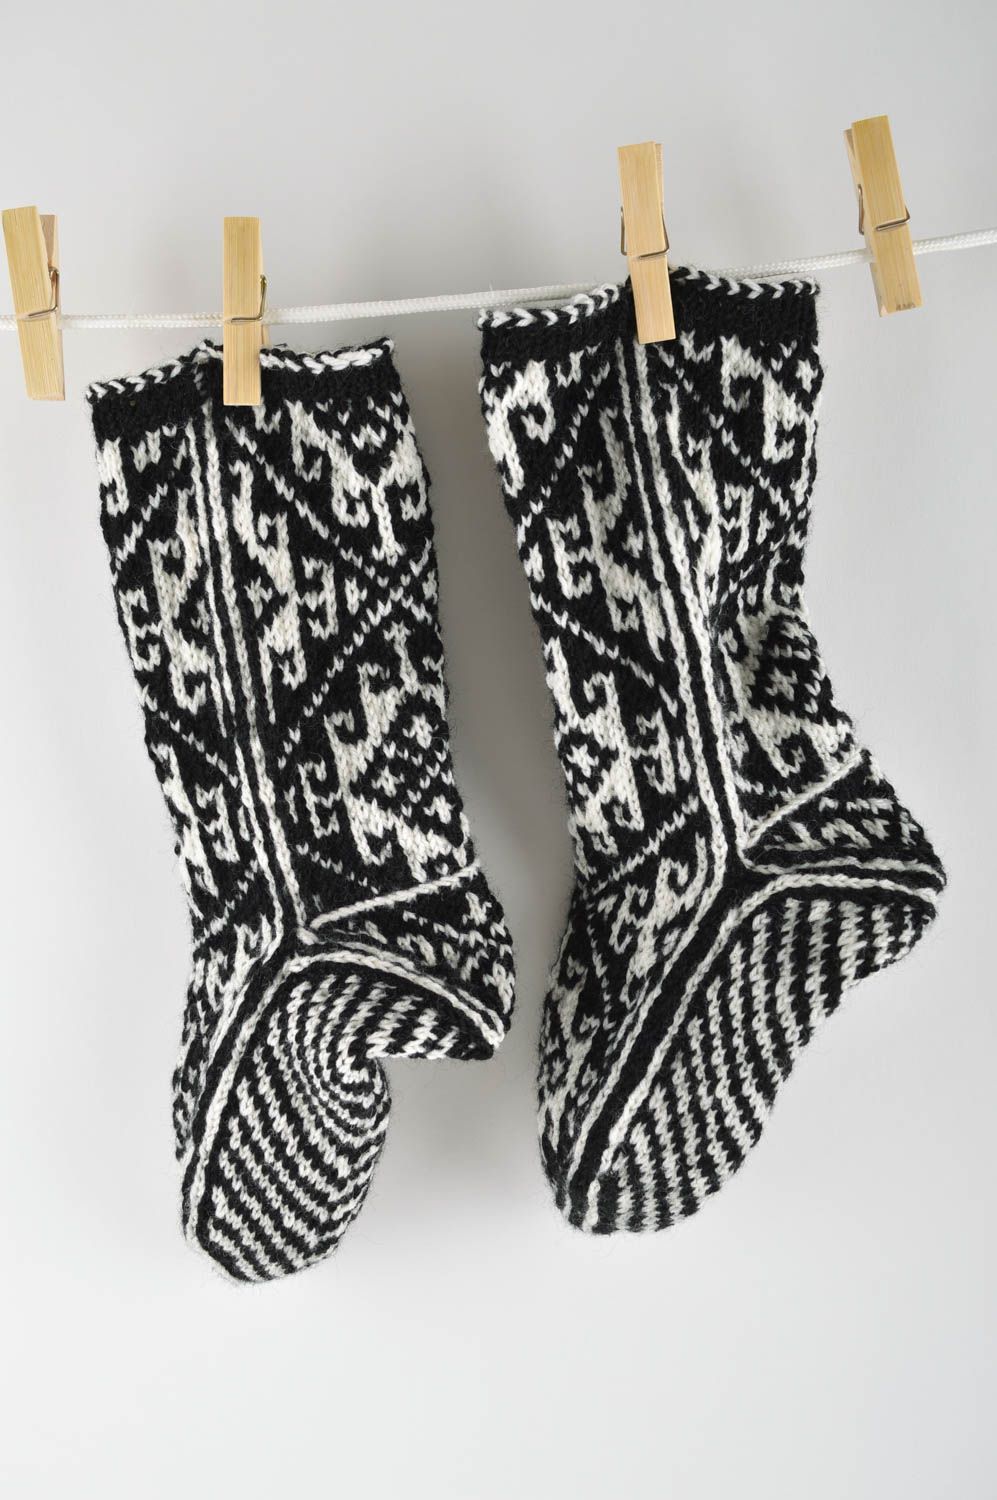 Handmade woolen socks present for men handcrafted socks hand knitted socks photo 1